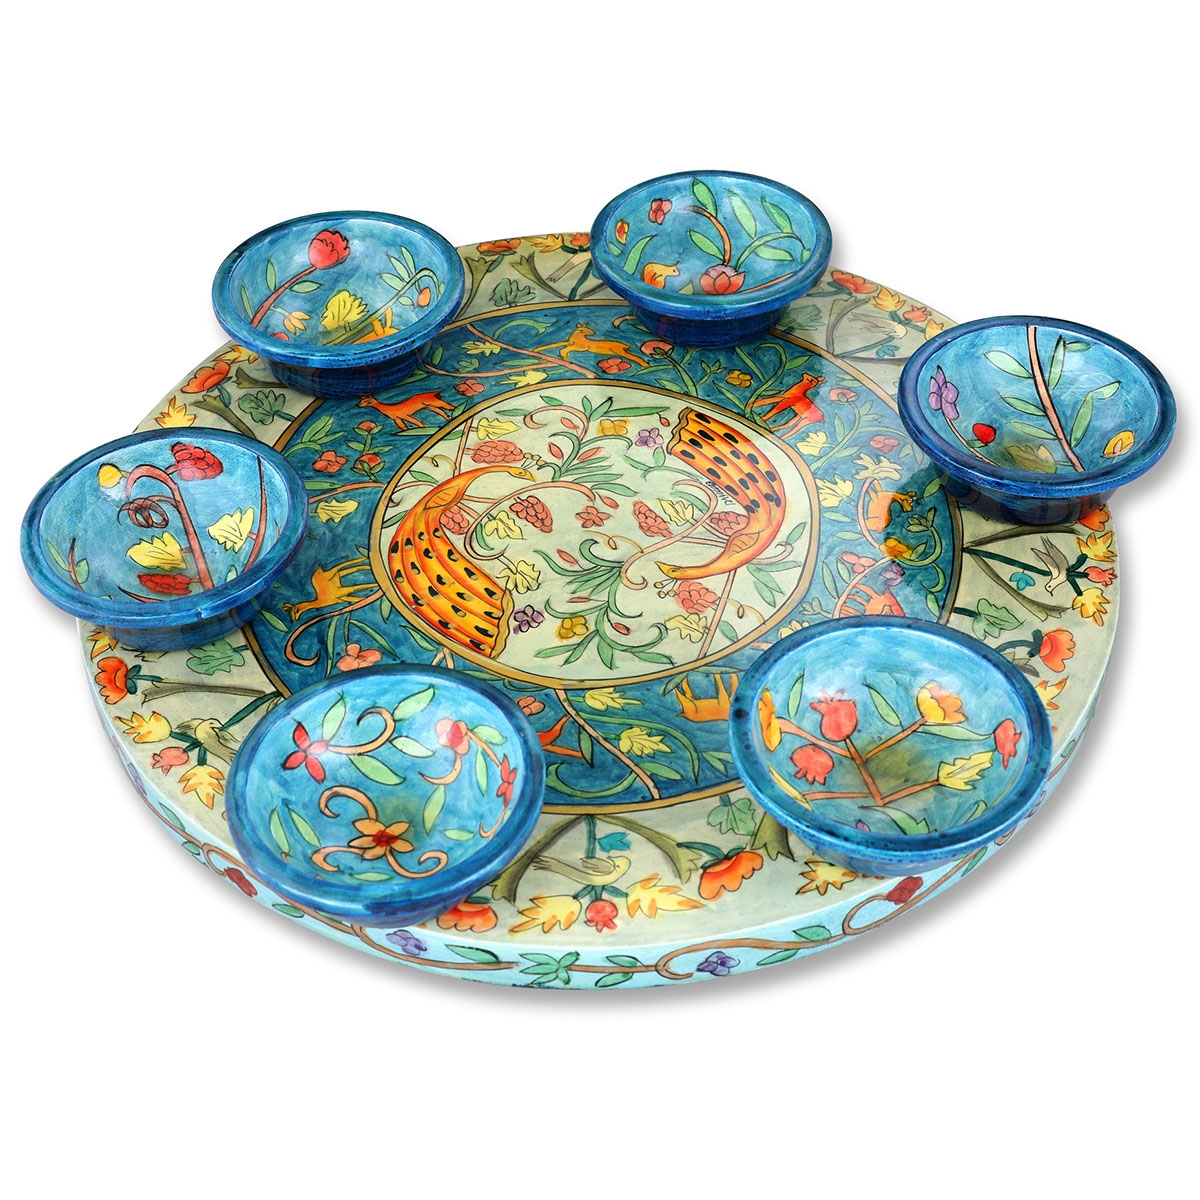 Seder Plate With Peacocks Design By Yair Emanuel - 1